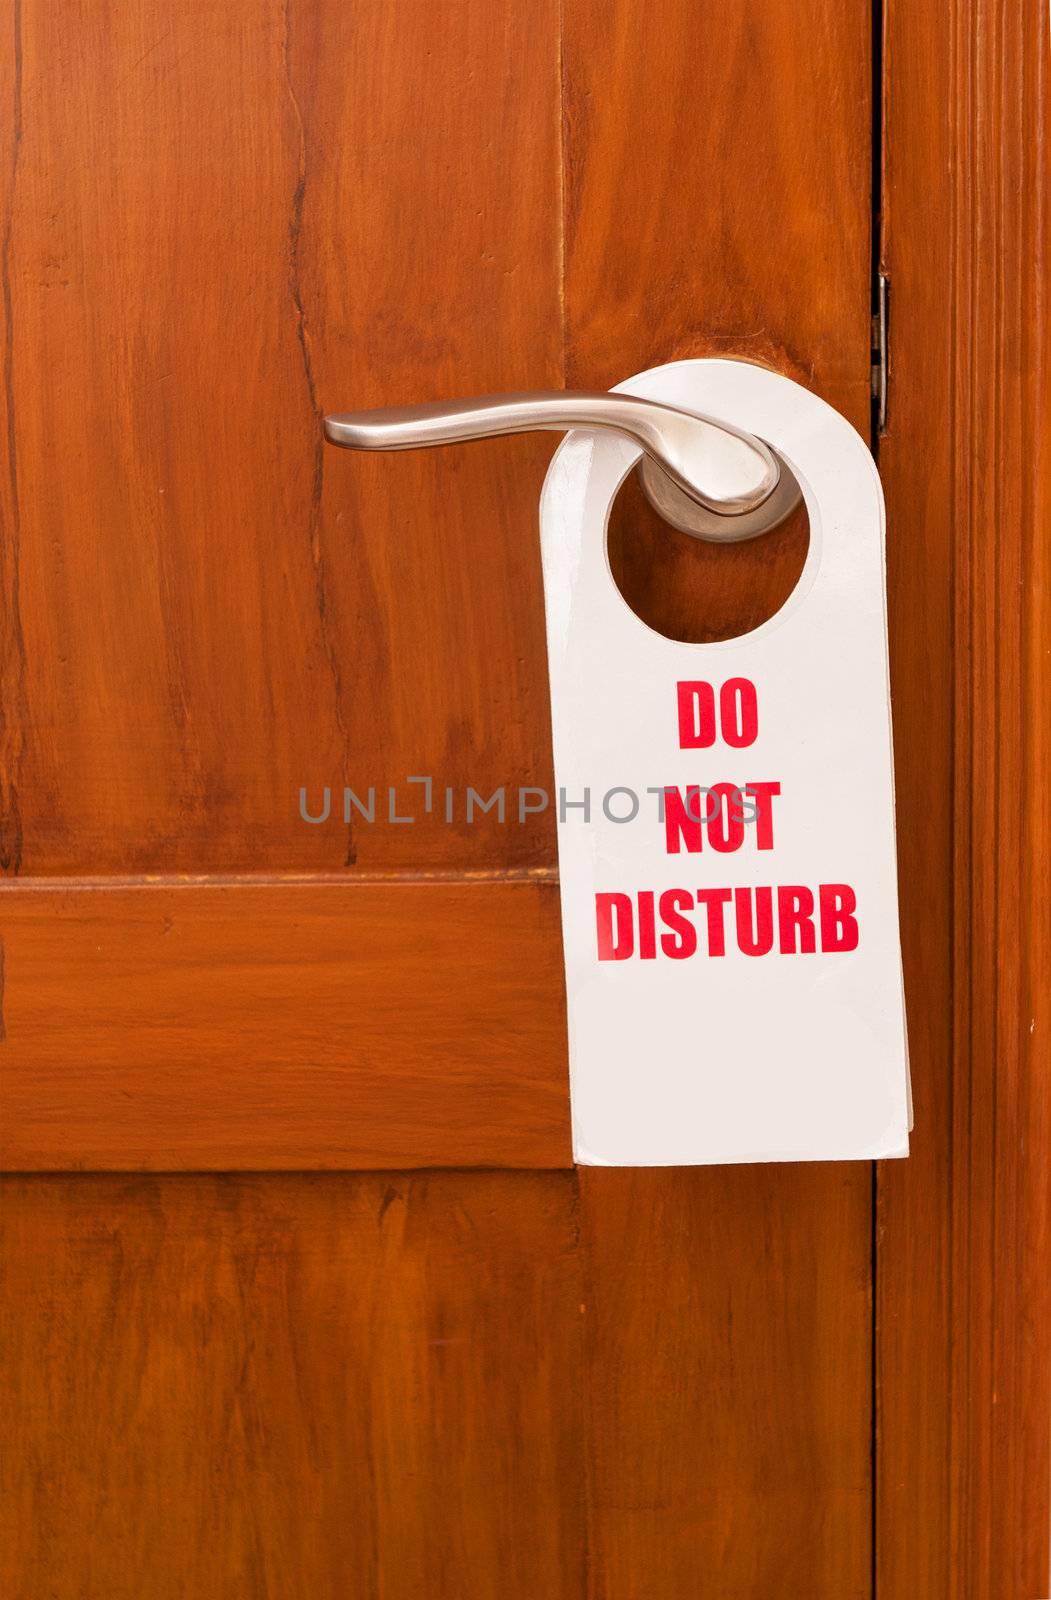 Do not disturb by pazham